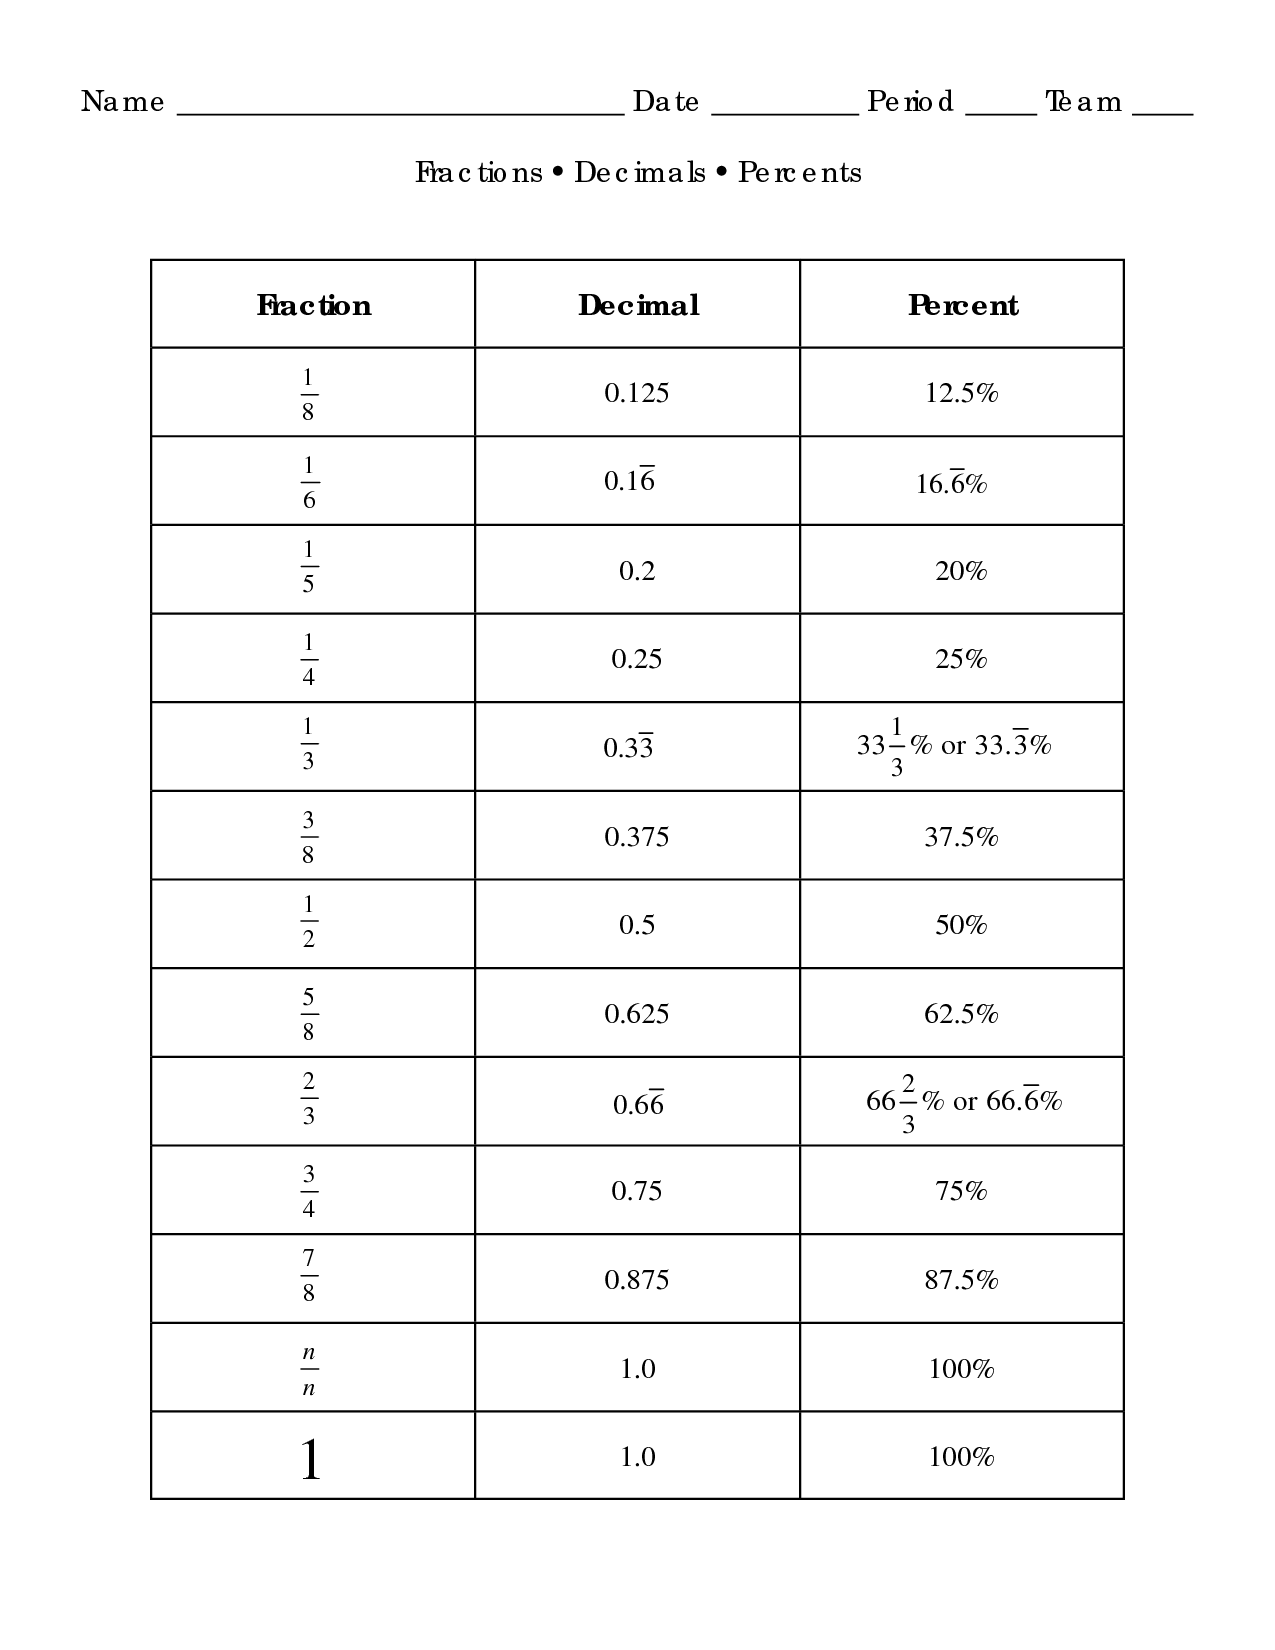 Fraction Decimal Percent Conversion Worksheet Image